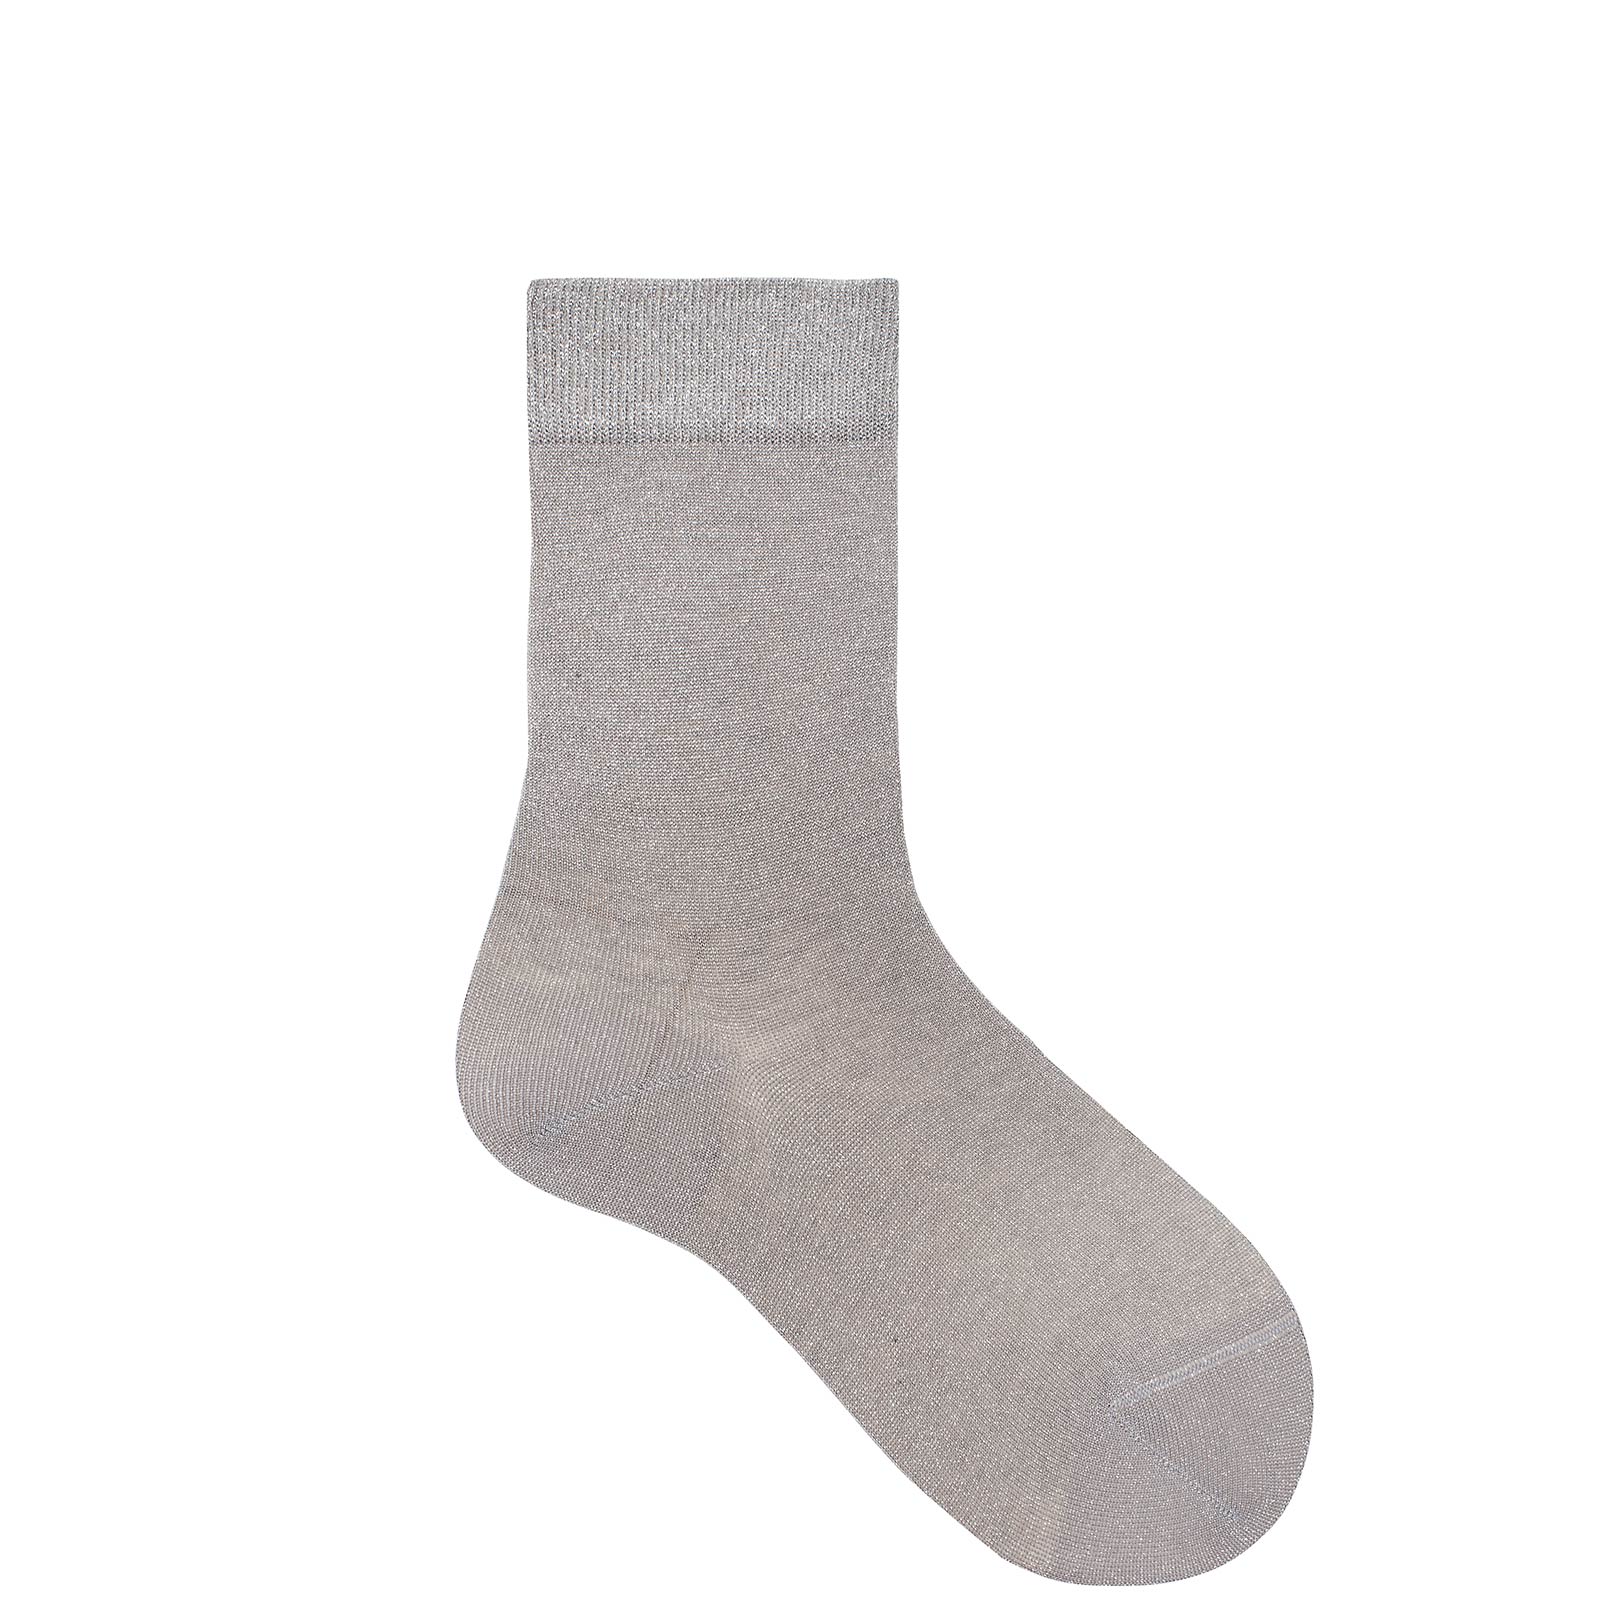 KUNERT Damen GLIMMER - 39/42 - Damen Socken mit modischem Glanz-Effekt - Lichtgrau (Grau)